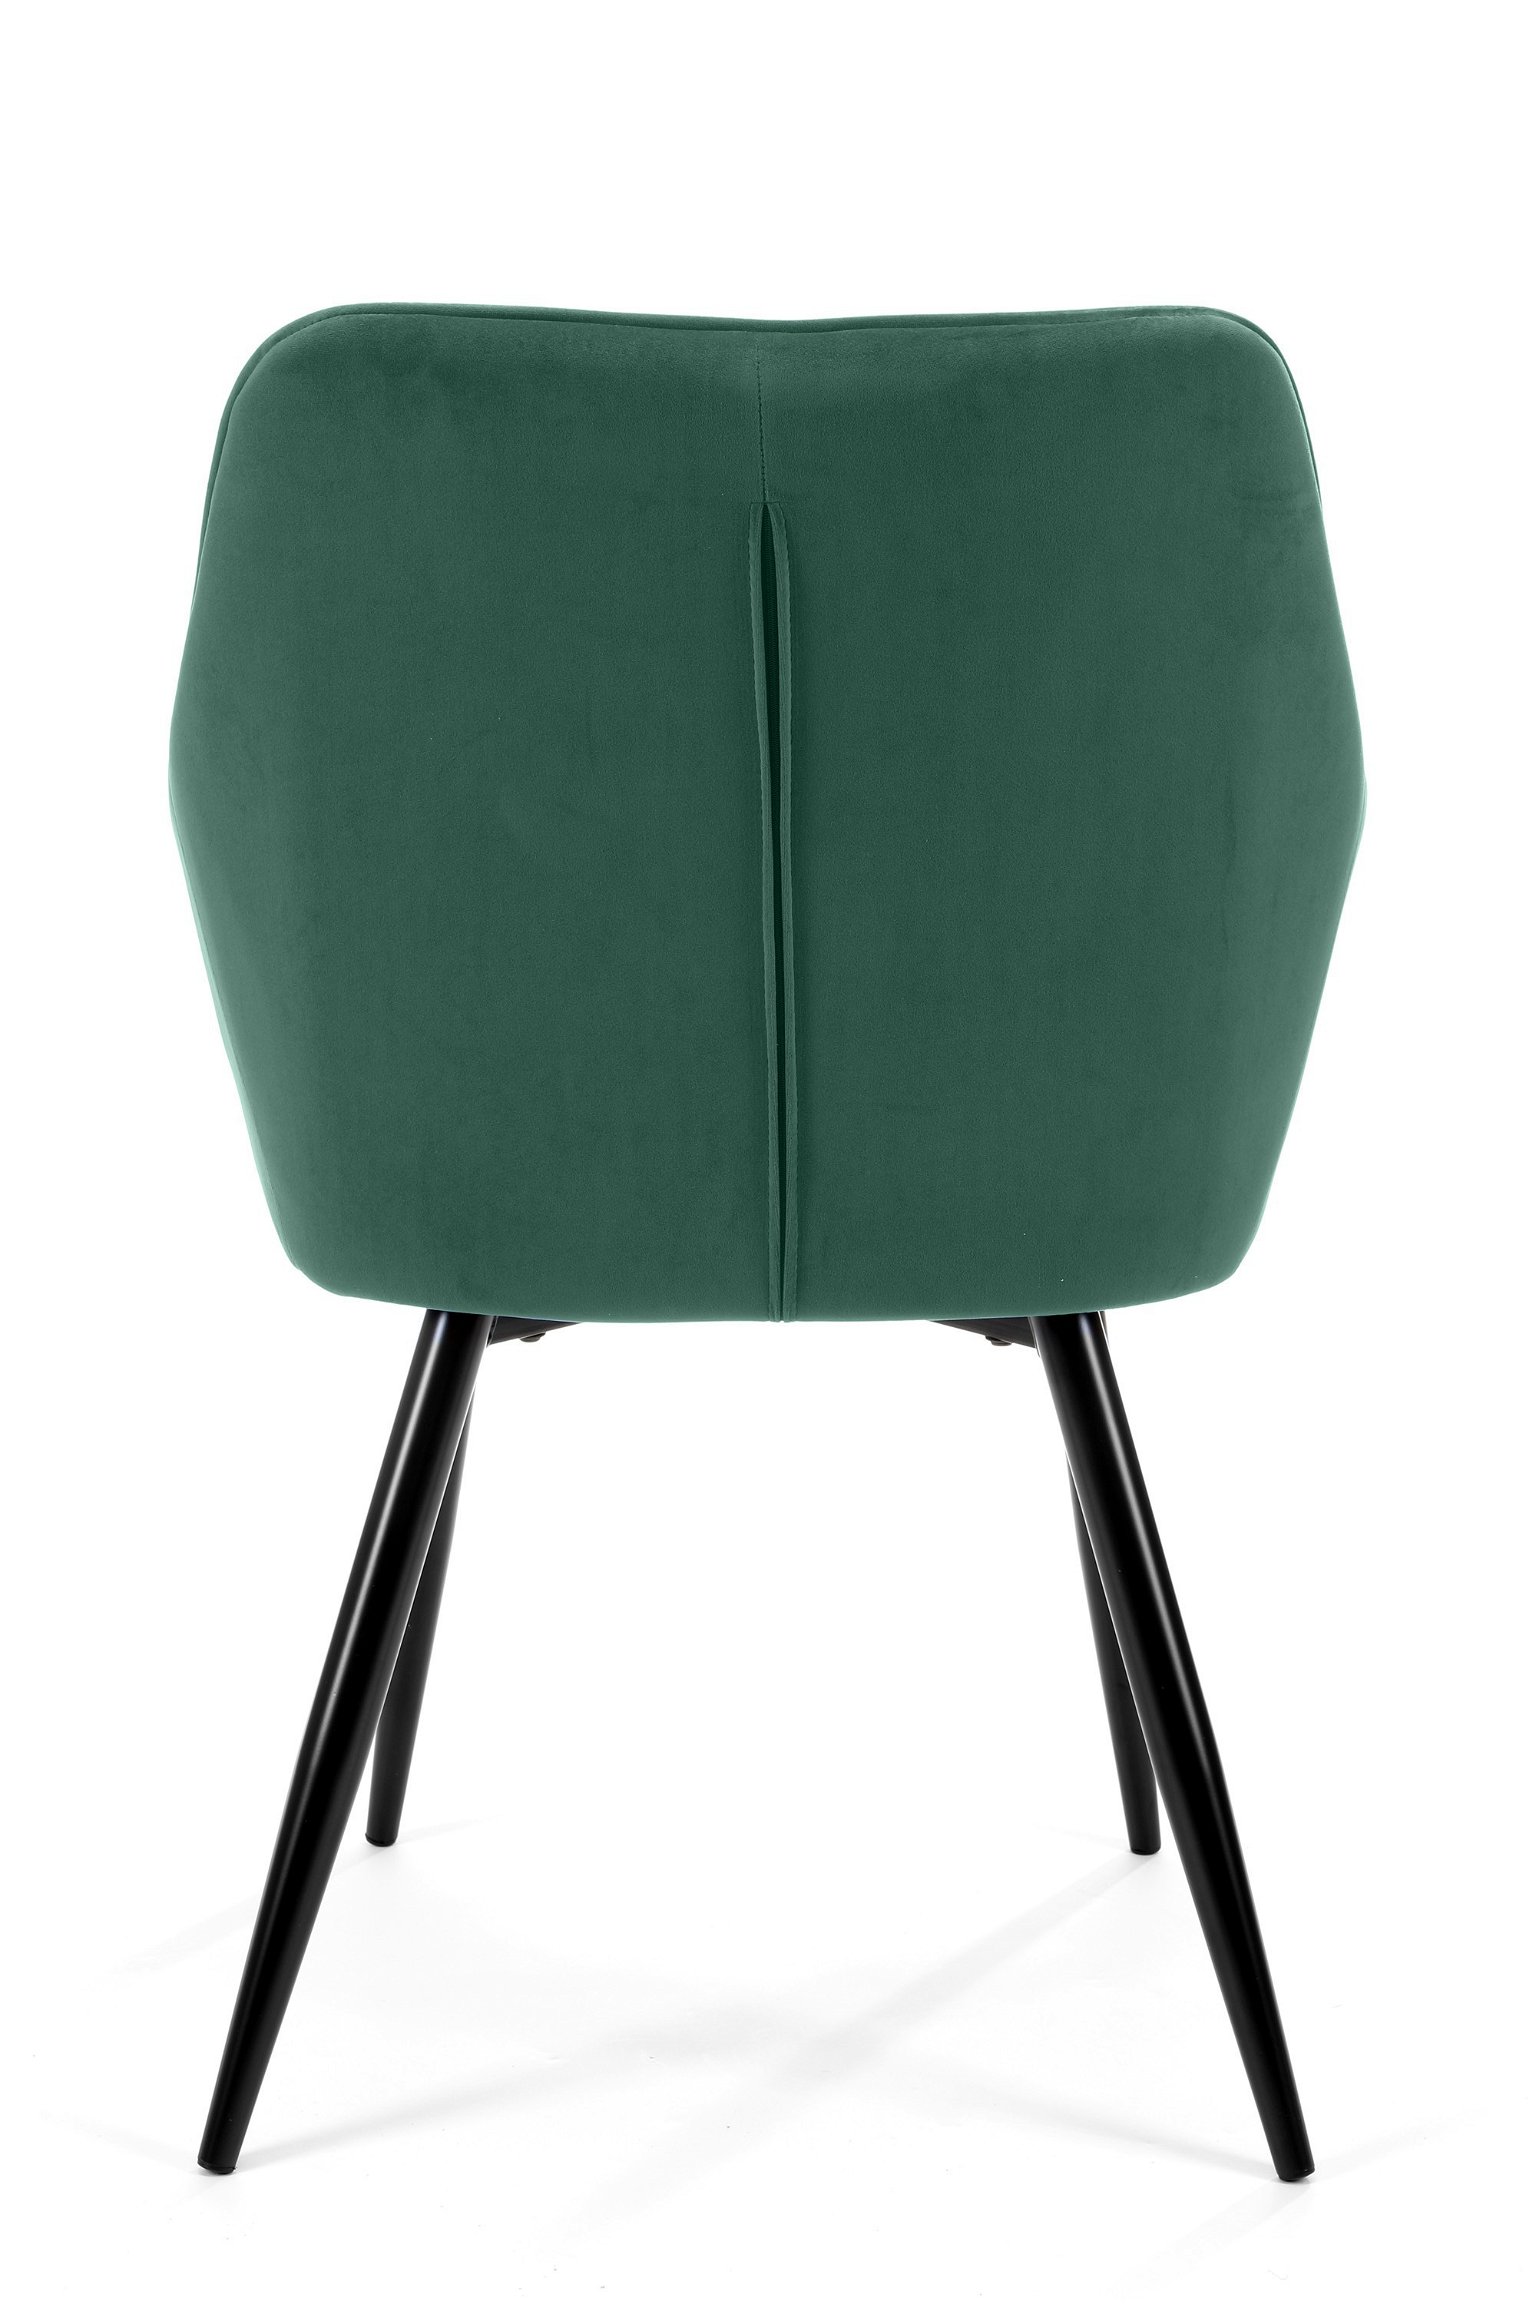 2-jų kėdžių komplektas SJ.082, žalia - 5